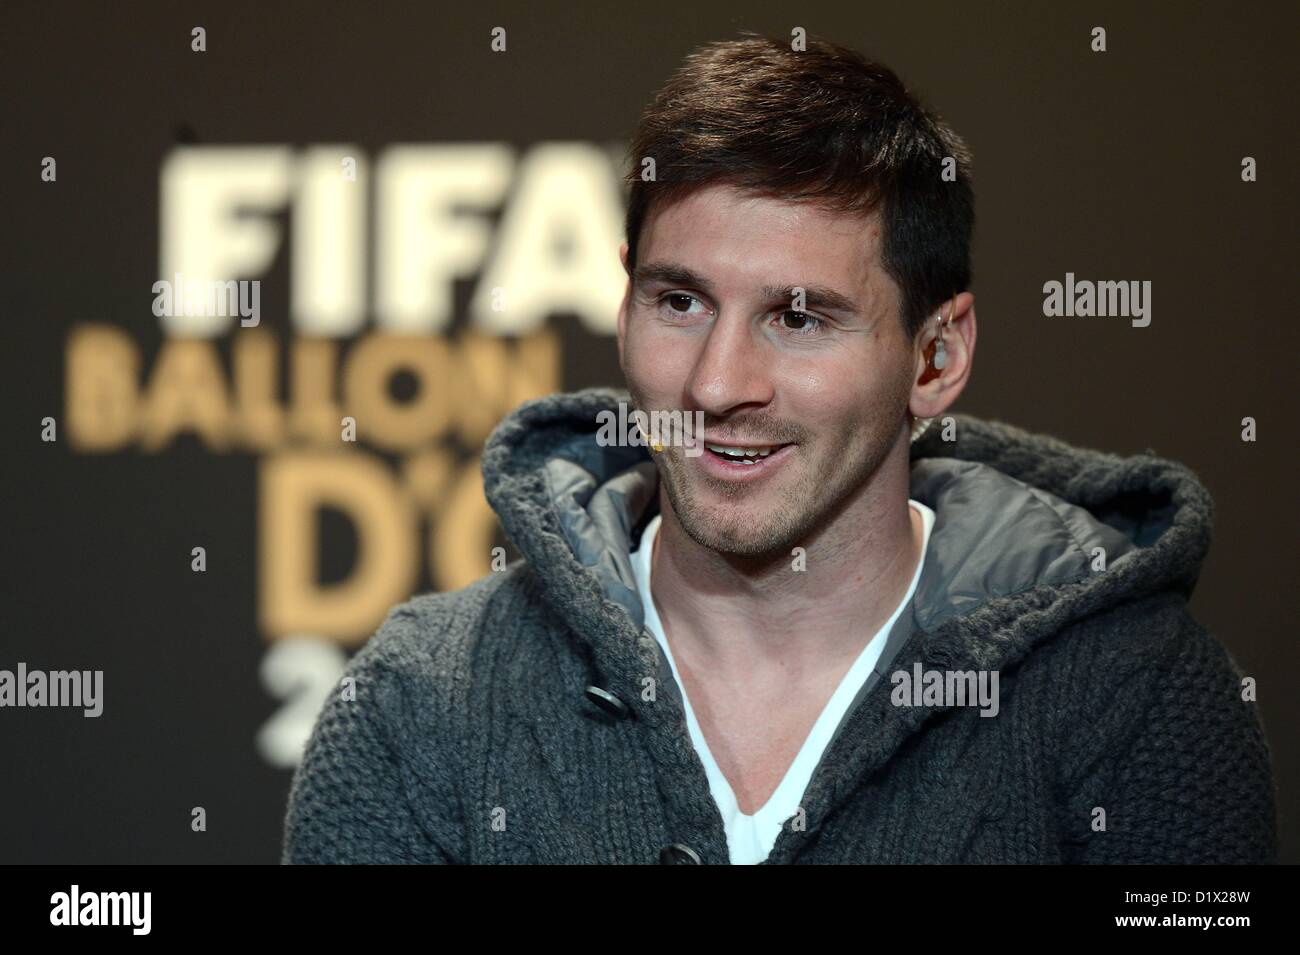 Messi, de novo, o melhor jogador do mundo – DW – 07/01/2013